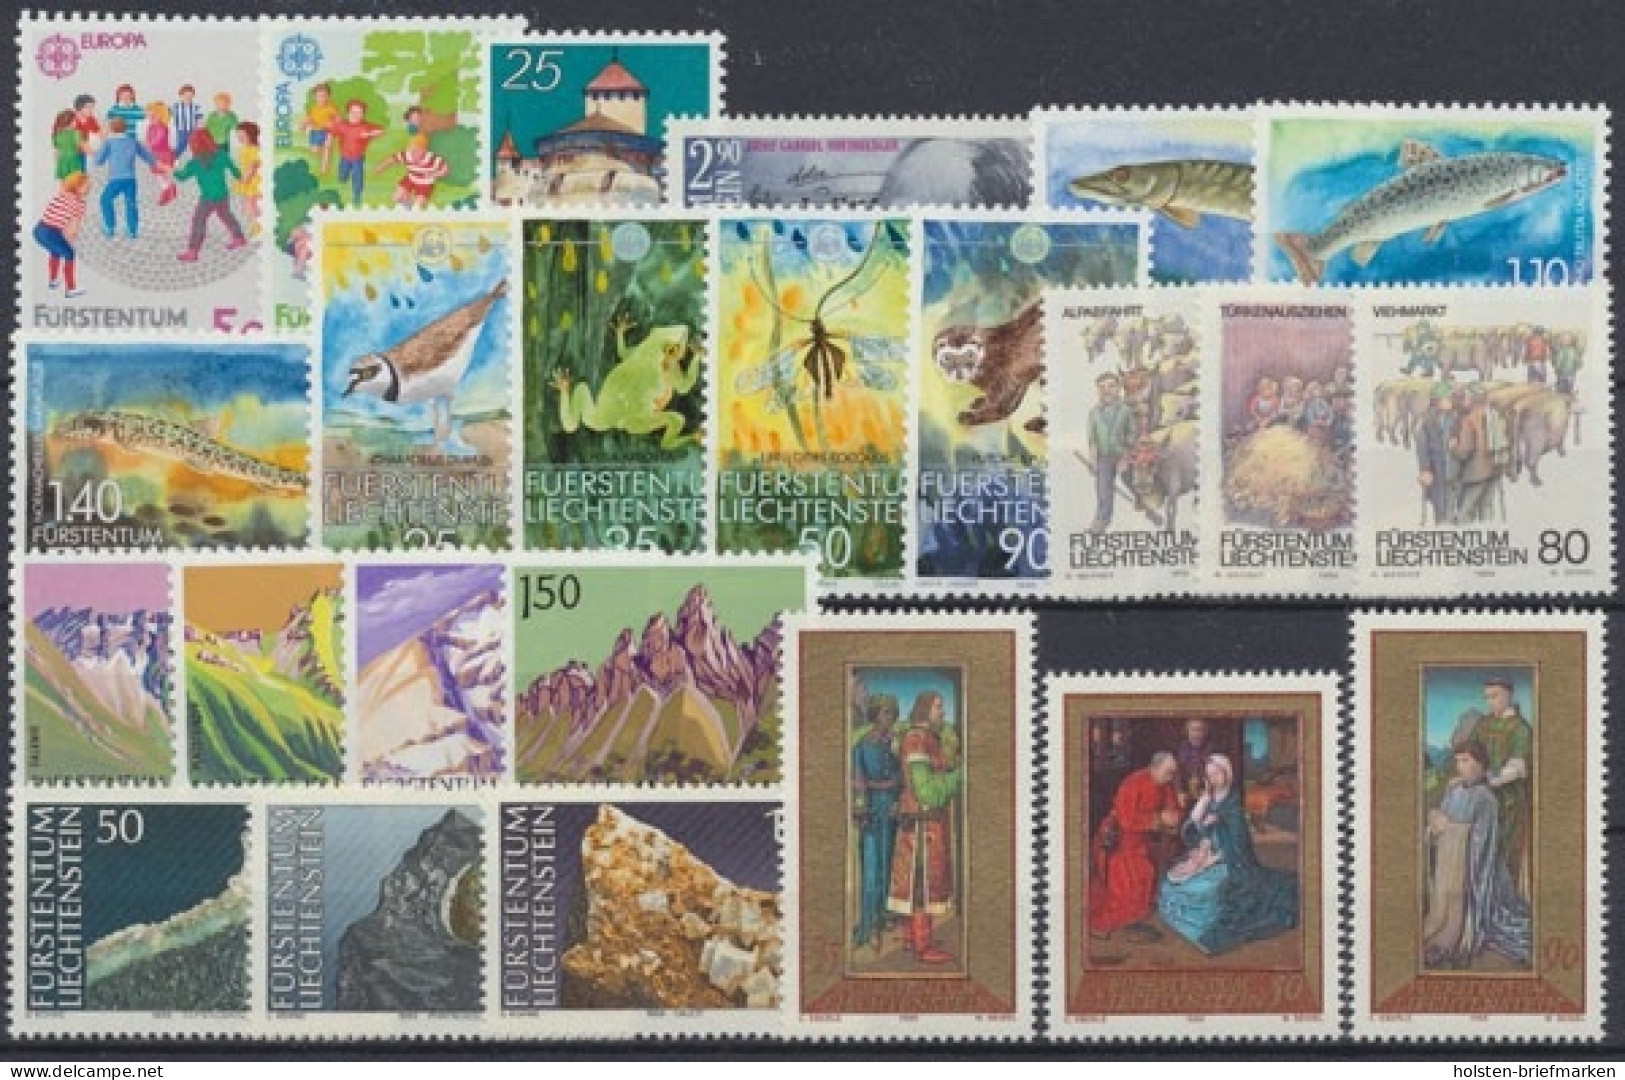 Liechtenstein, MiNr. 960-983, Jahrgang 1989, Postfrisch - Full Years